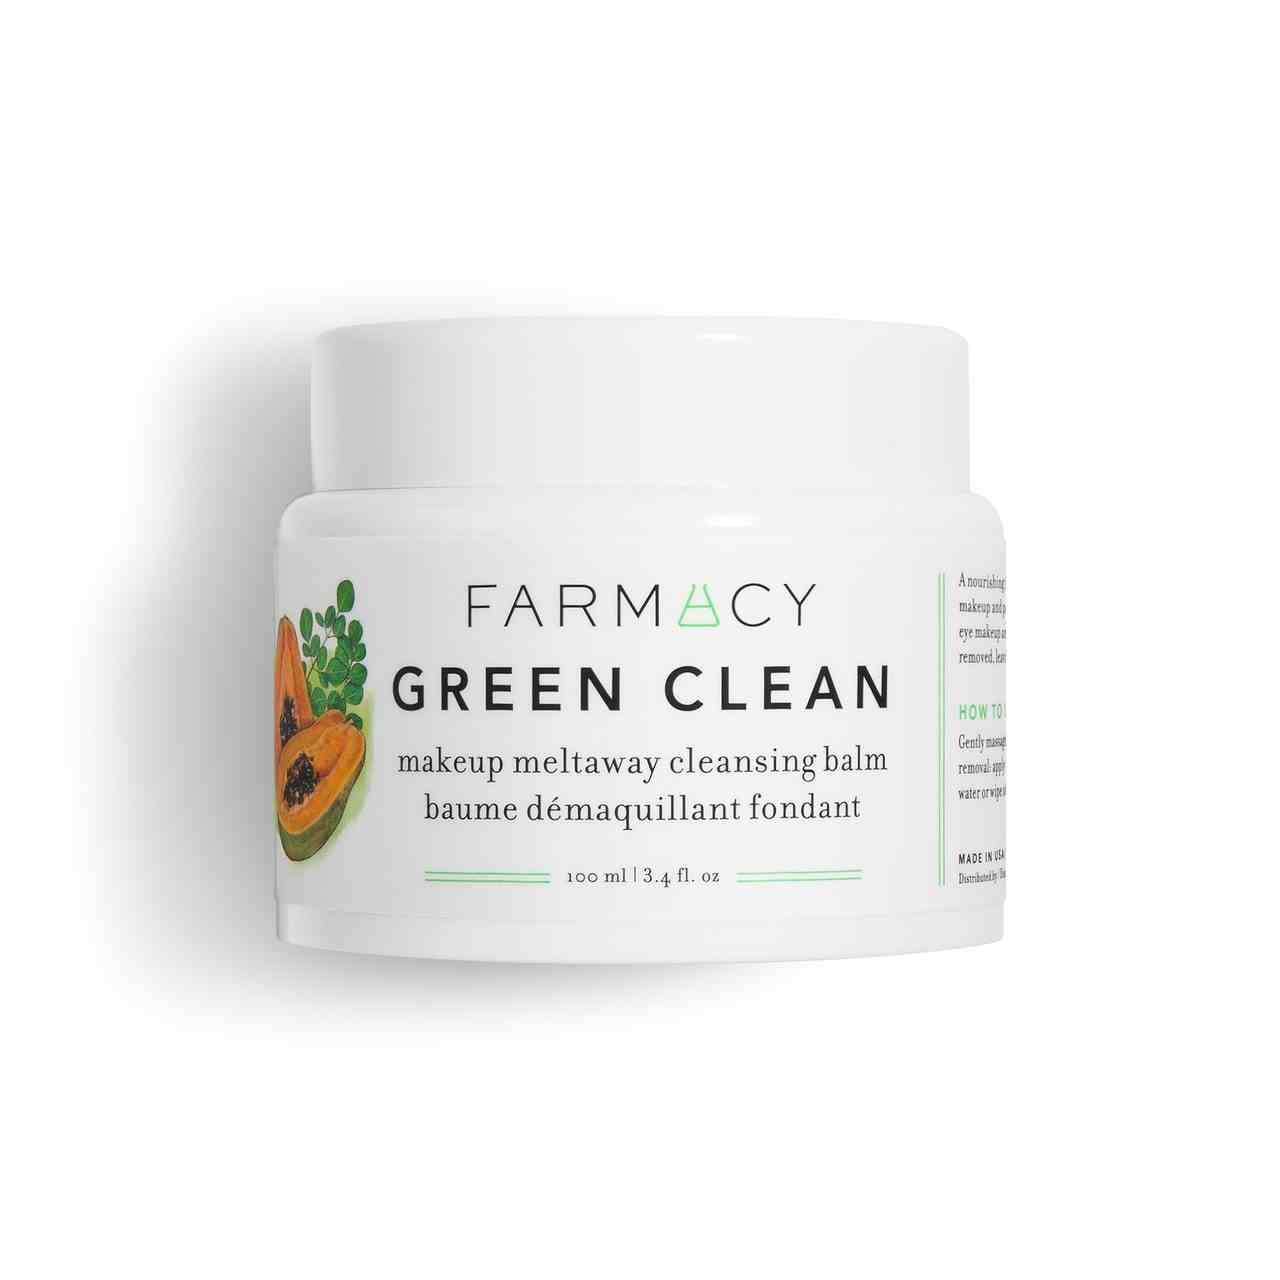 Farmacy Green Clean Makeup Meltaway Reinigungsbalsam auf weißem Hintergrund